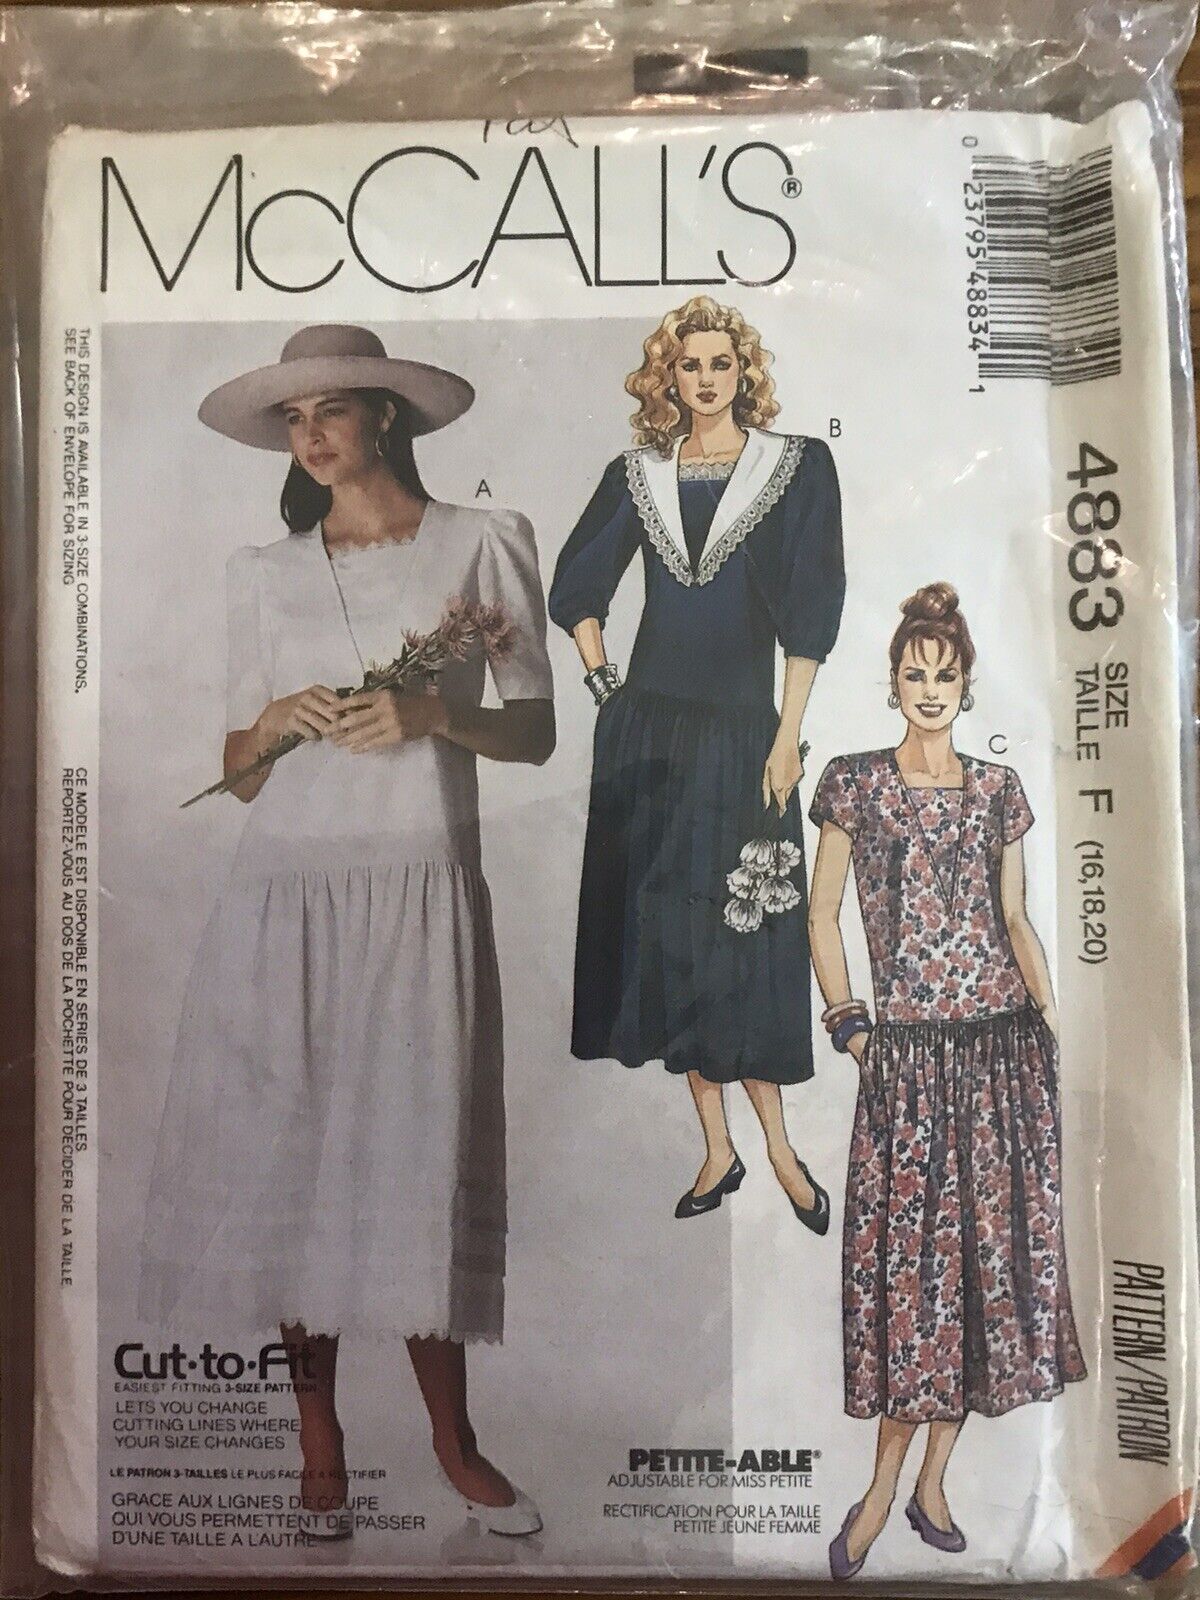 McCalls 4883 Misses Dress, Petit-Able, Cut To Fit, Size F 16-20, 1990